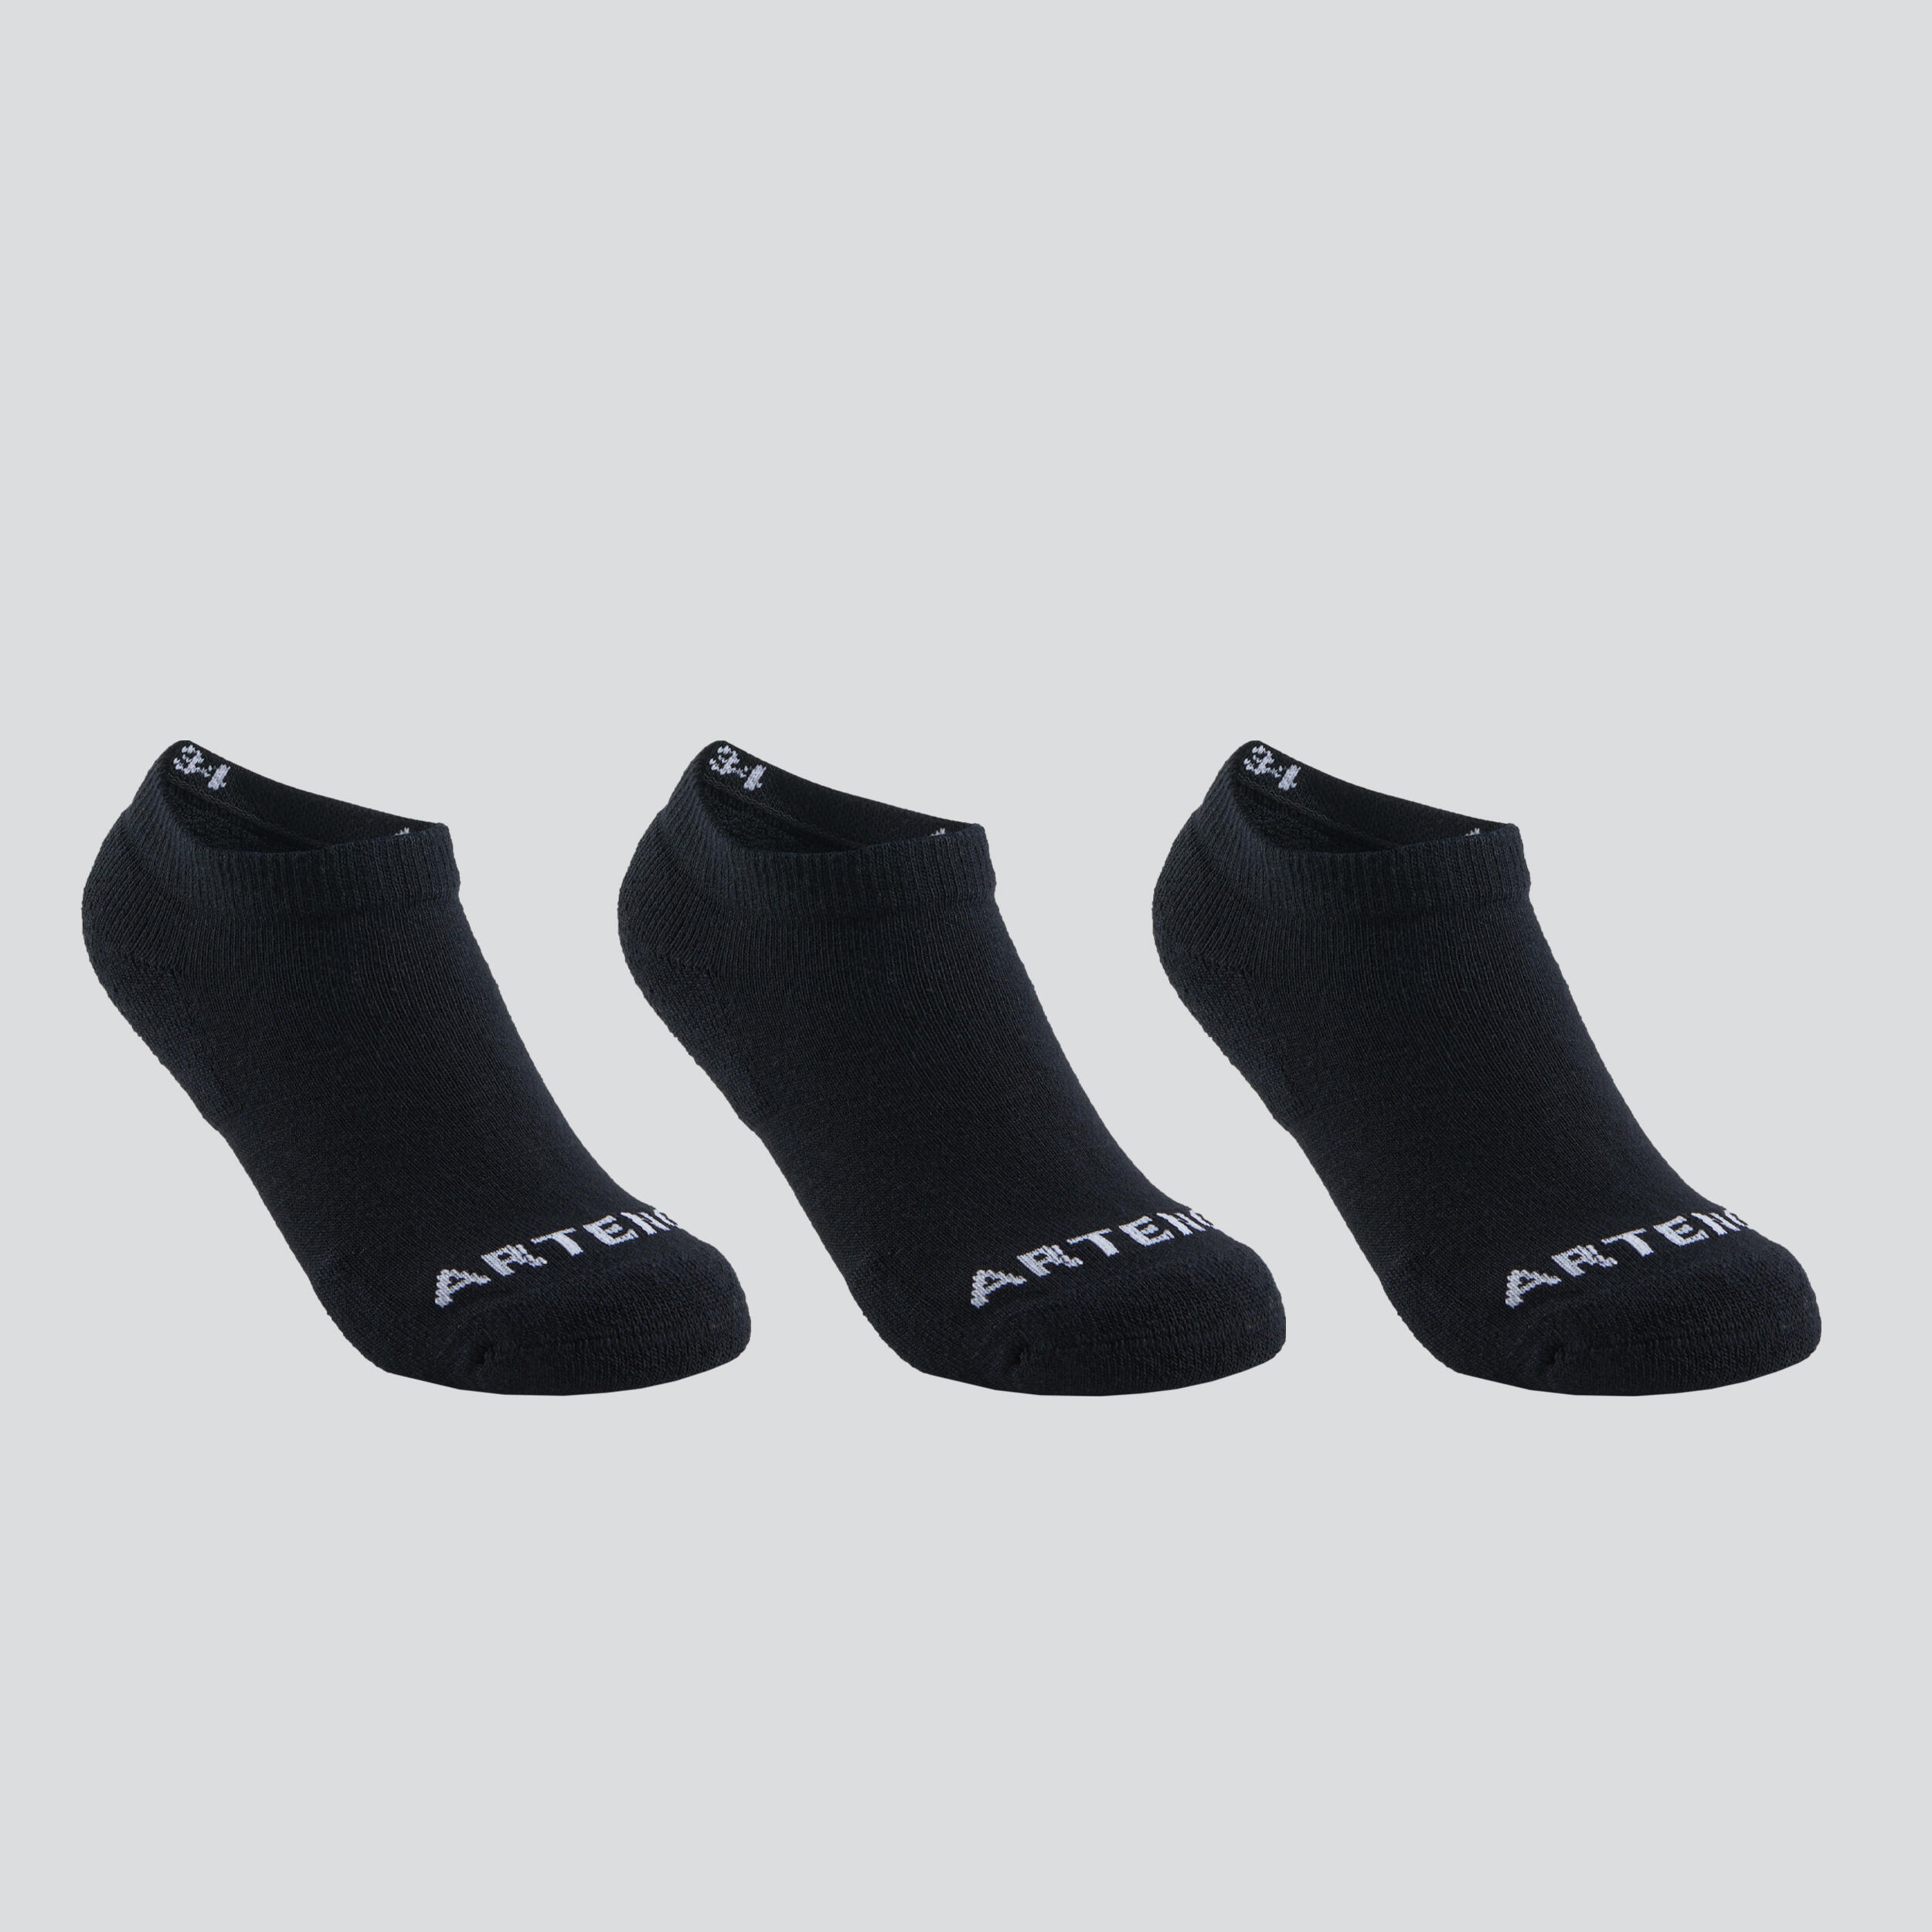 ARTENGO Kids' Low-Cut Racket Sports Socks RS 100 Tri-Pack - Black